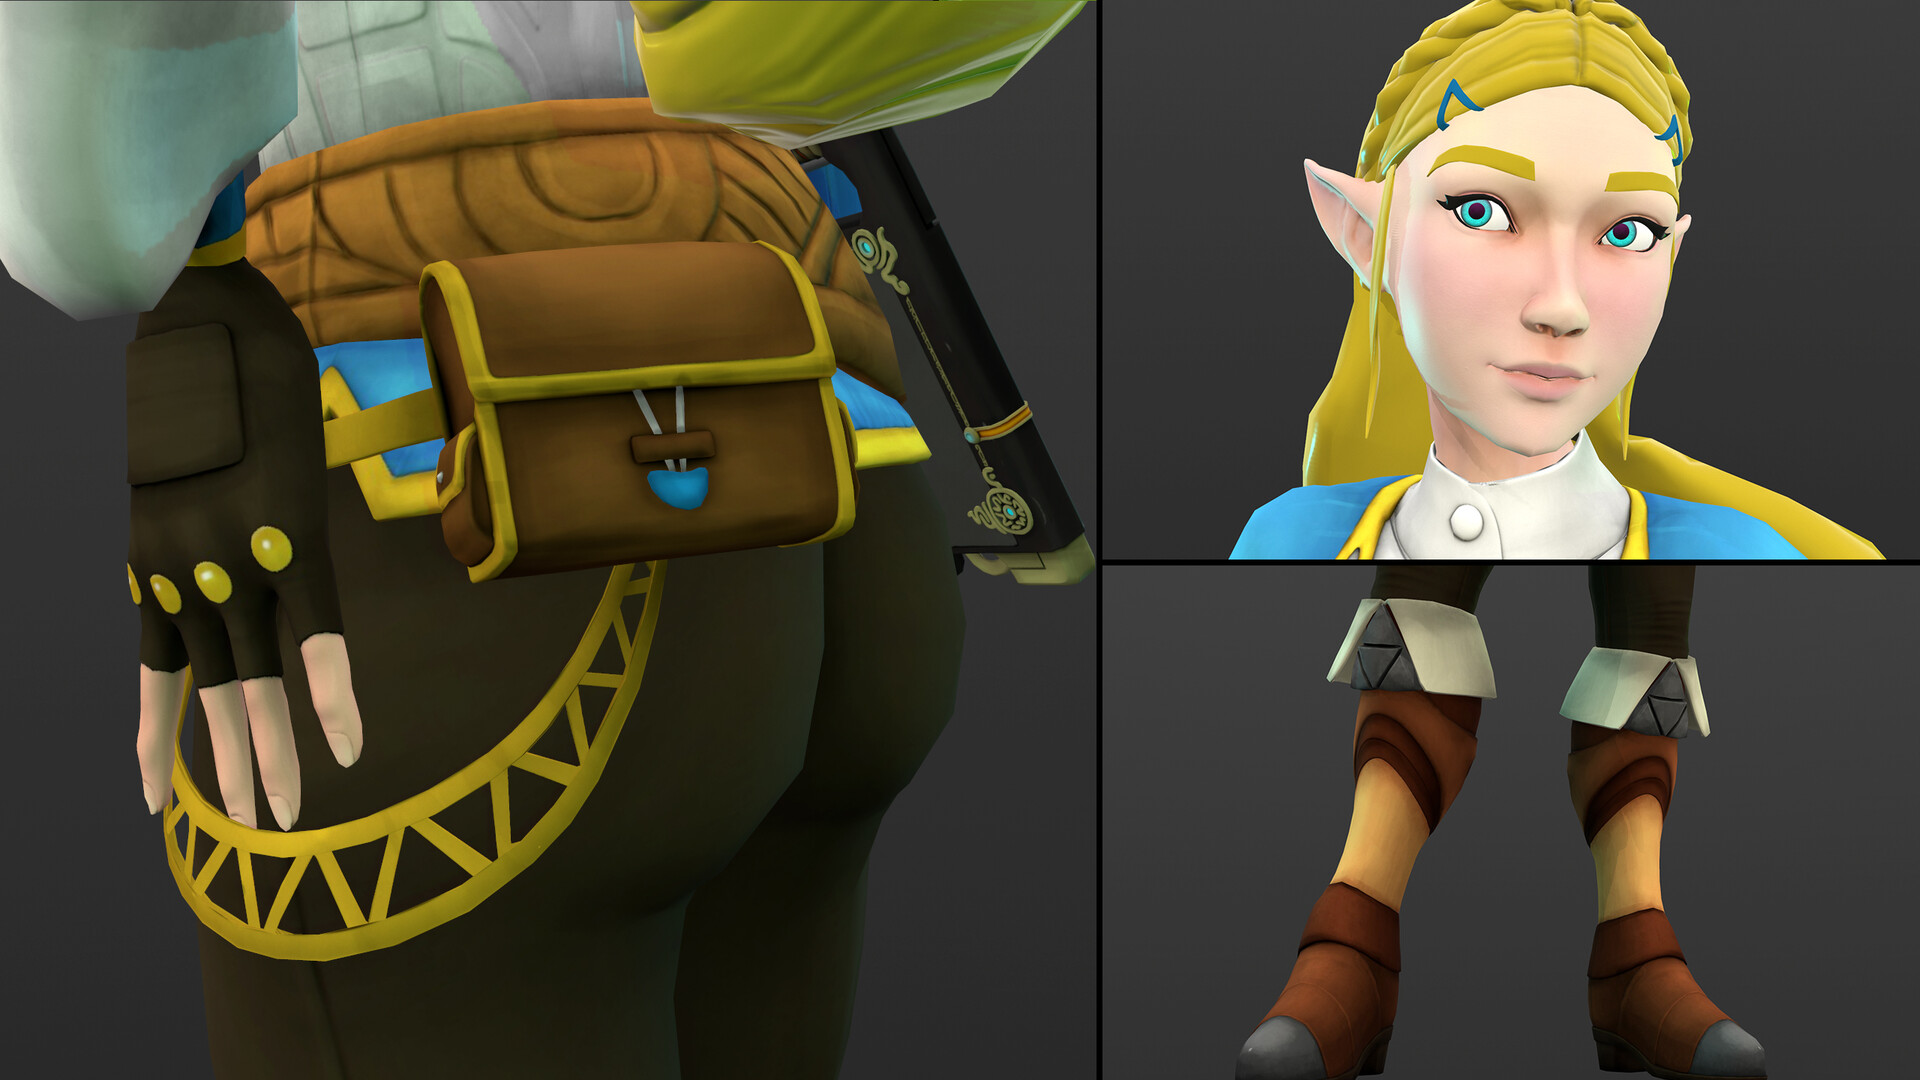 ArtStation - Link - Zelda BOTW Fan Art